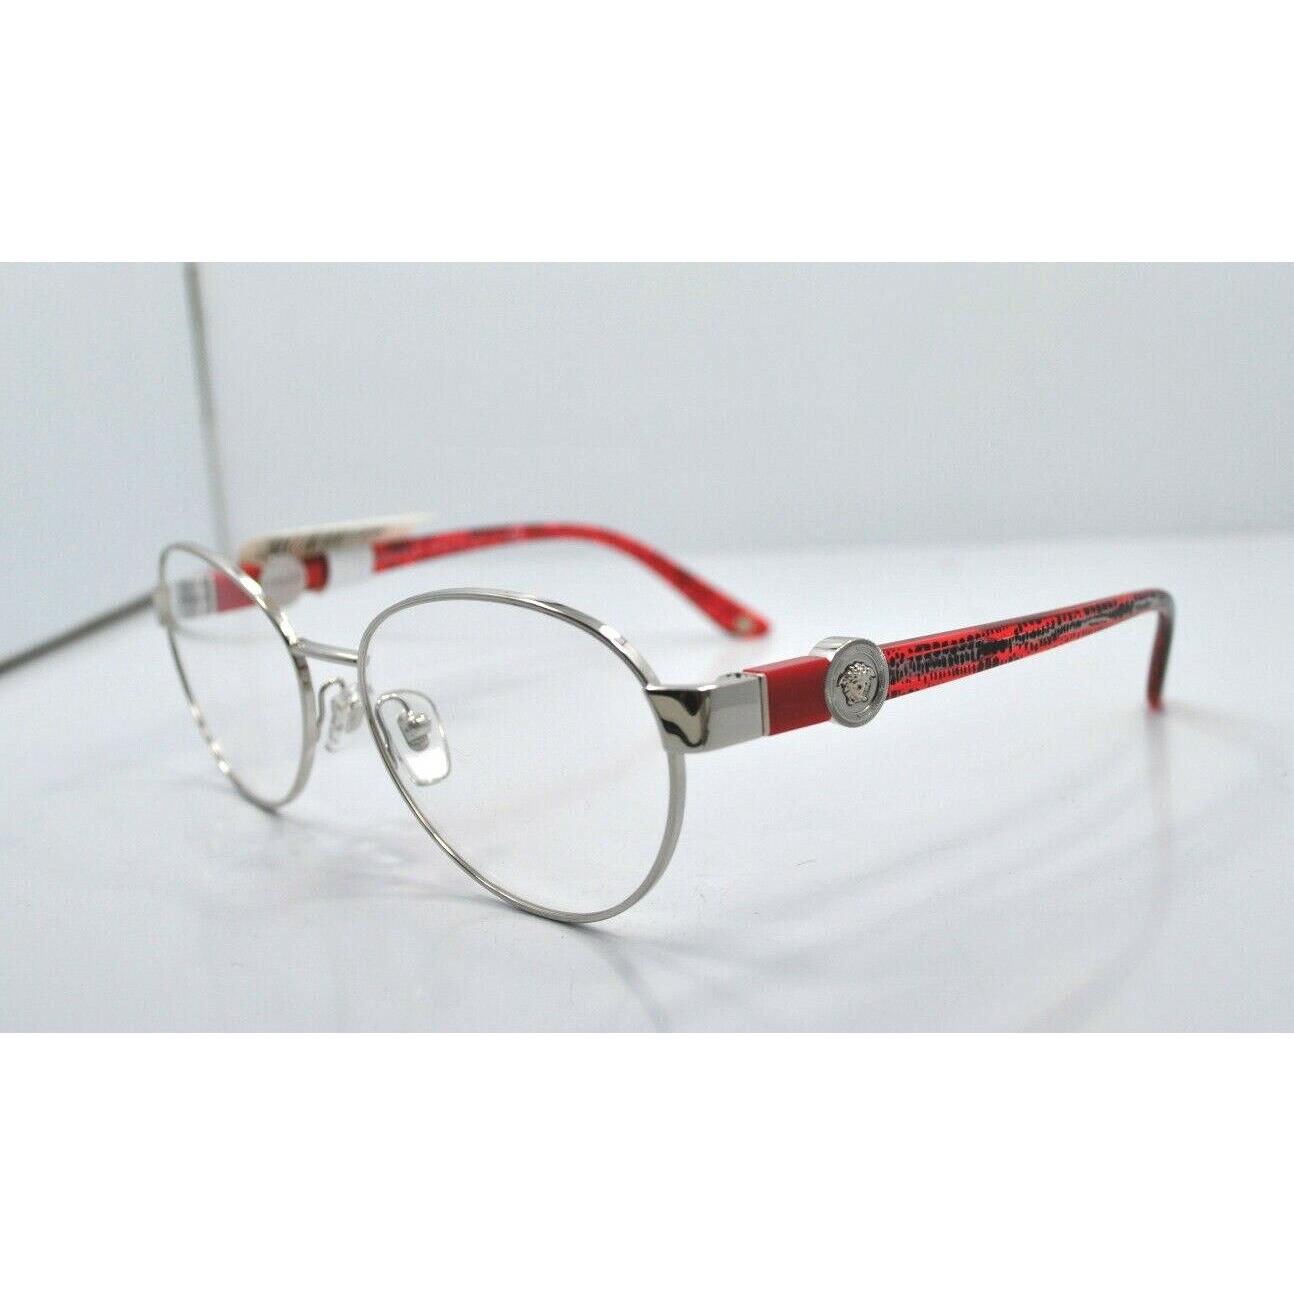 Versace Eyeglasses Frames 1201 1000